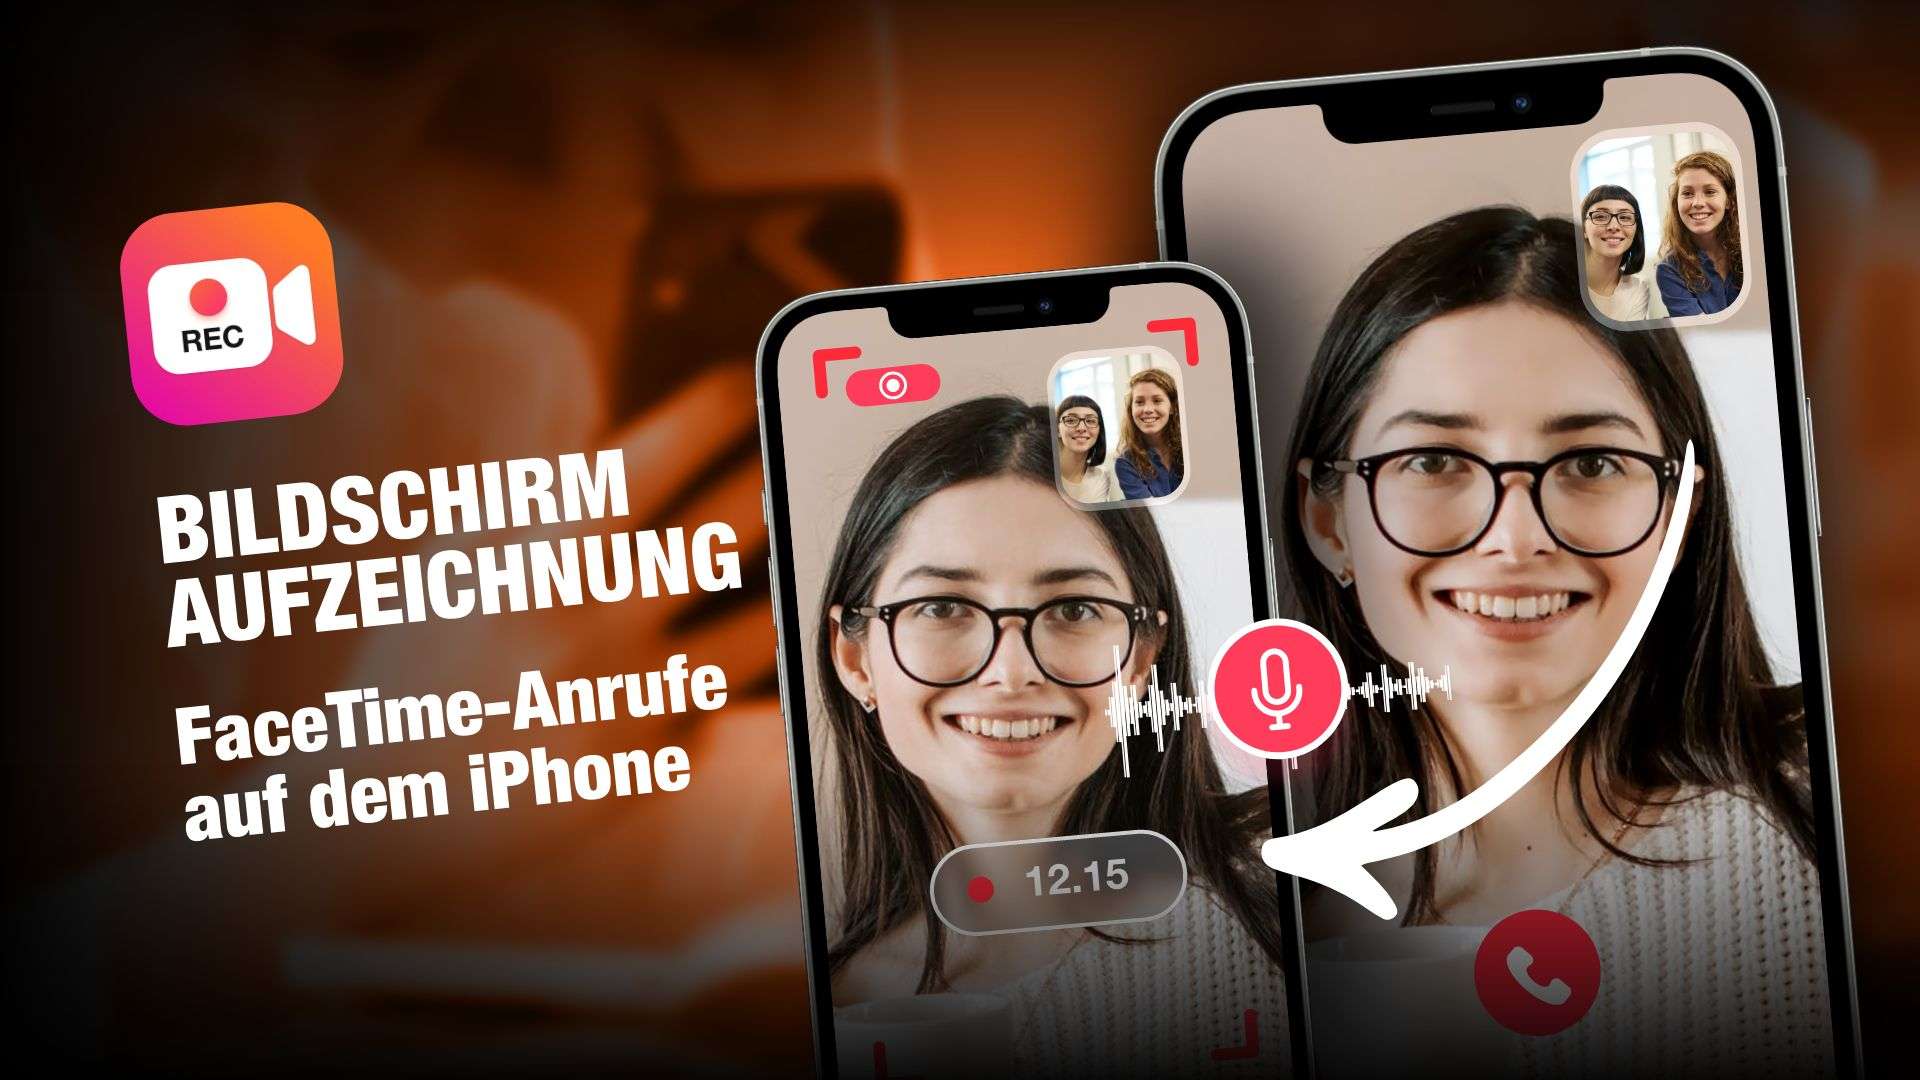 Bildschirm FaceTime-Anrufe mit Ton auf dem iPhone aufzeichnen